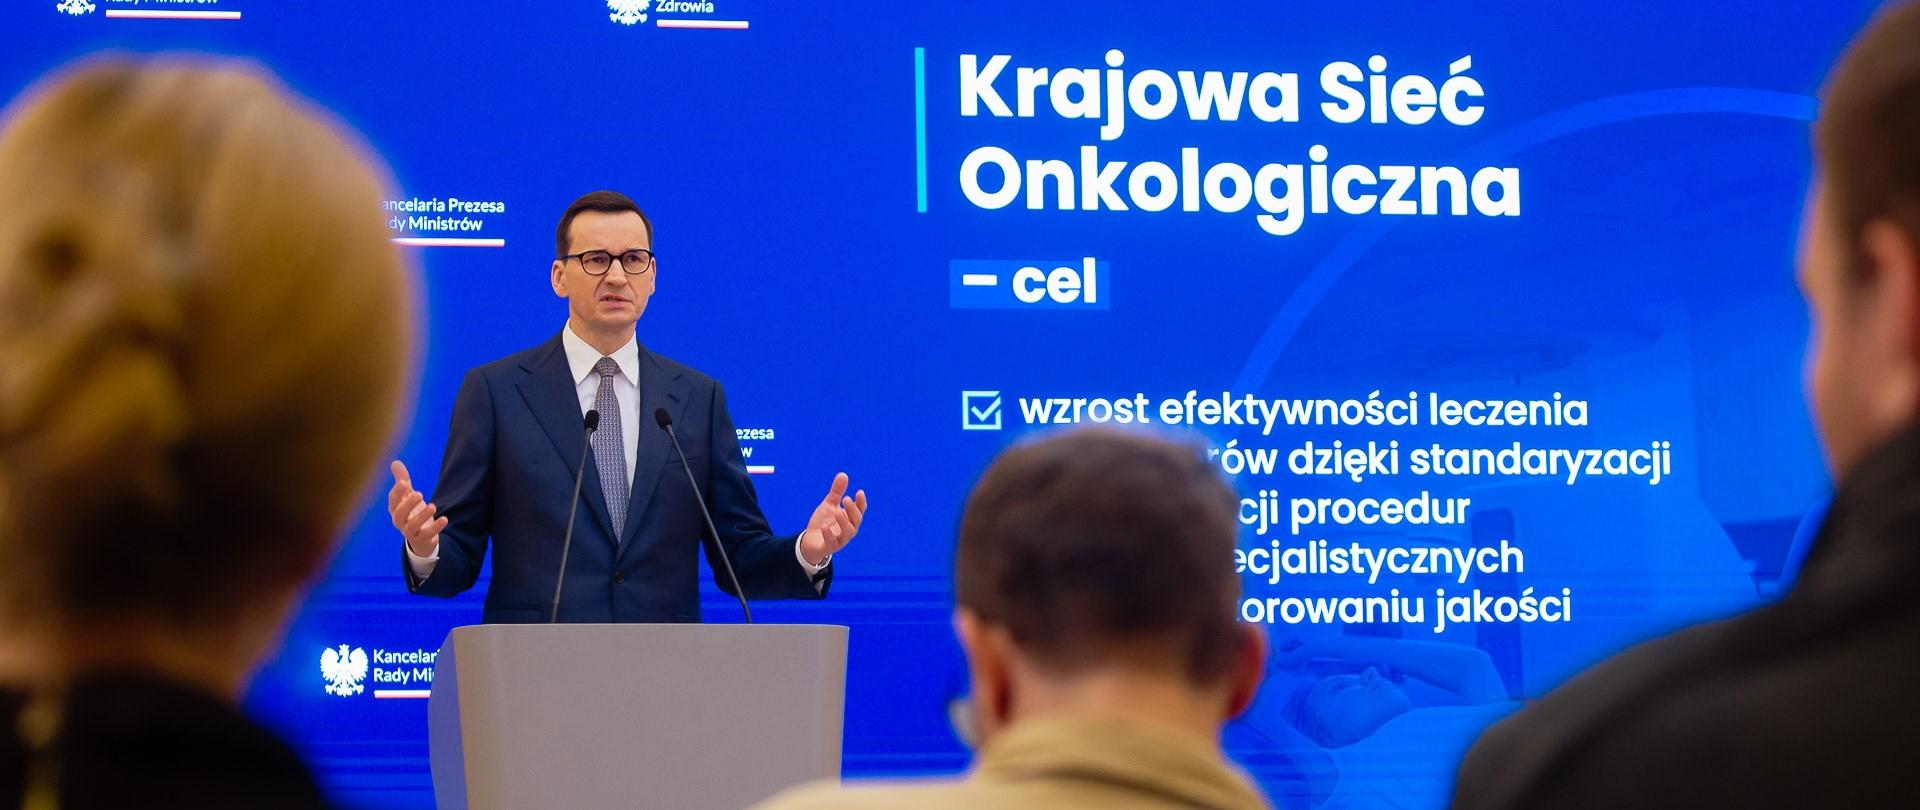 Premier Mateusz Morawiecki podczas konferencji dot. Krajowej Sieci Onkologicznej.